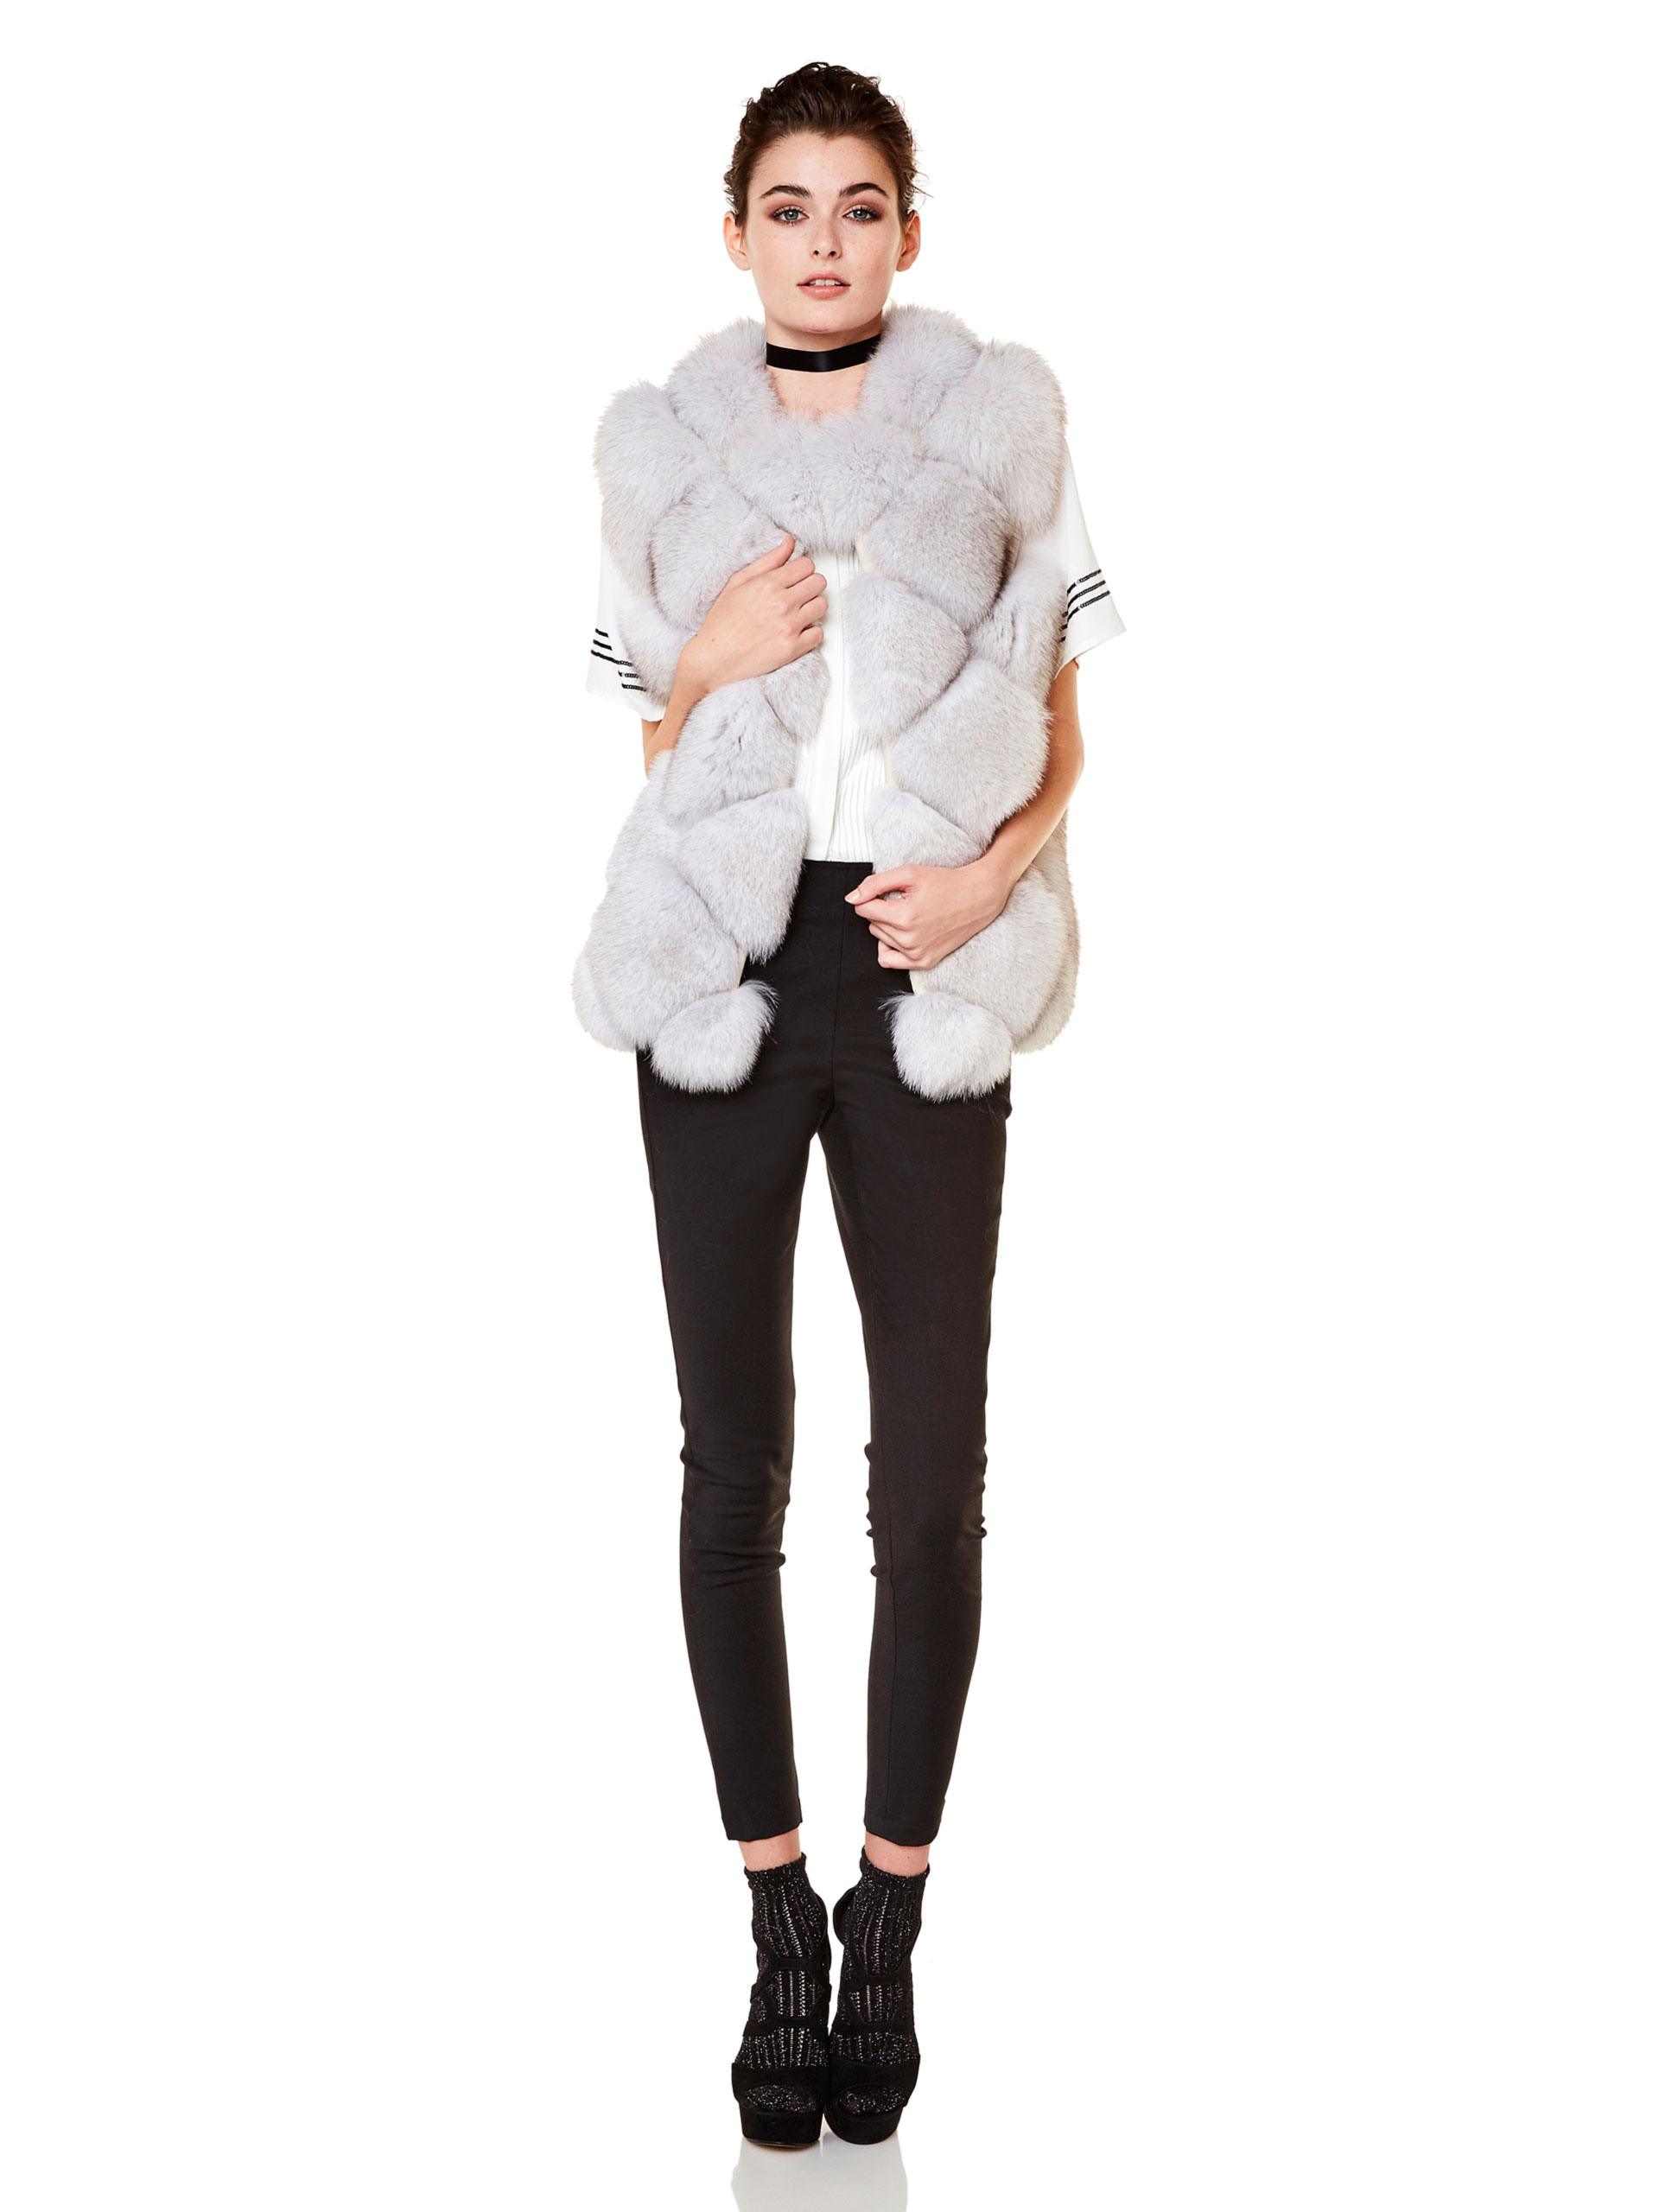 For Fur Vest Model | AVANTI FURS Collection